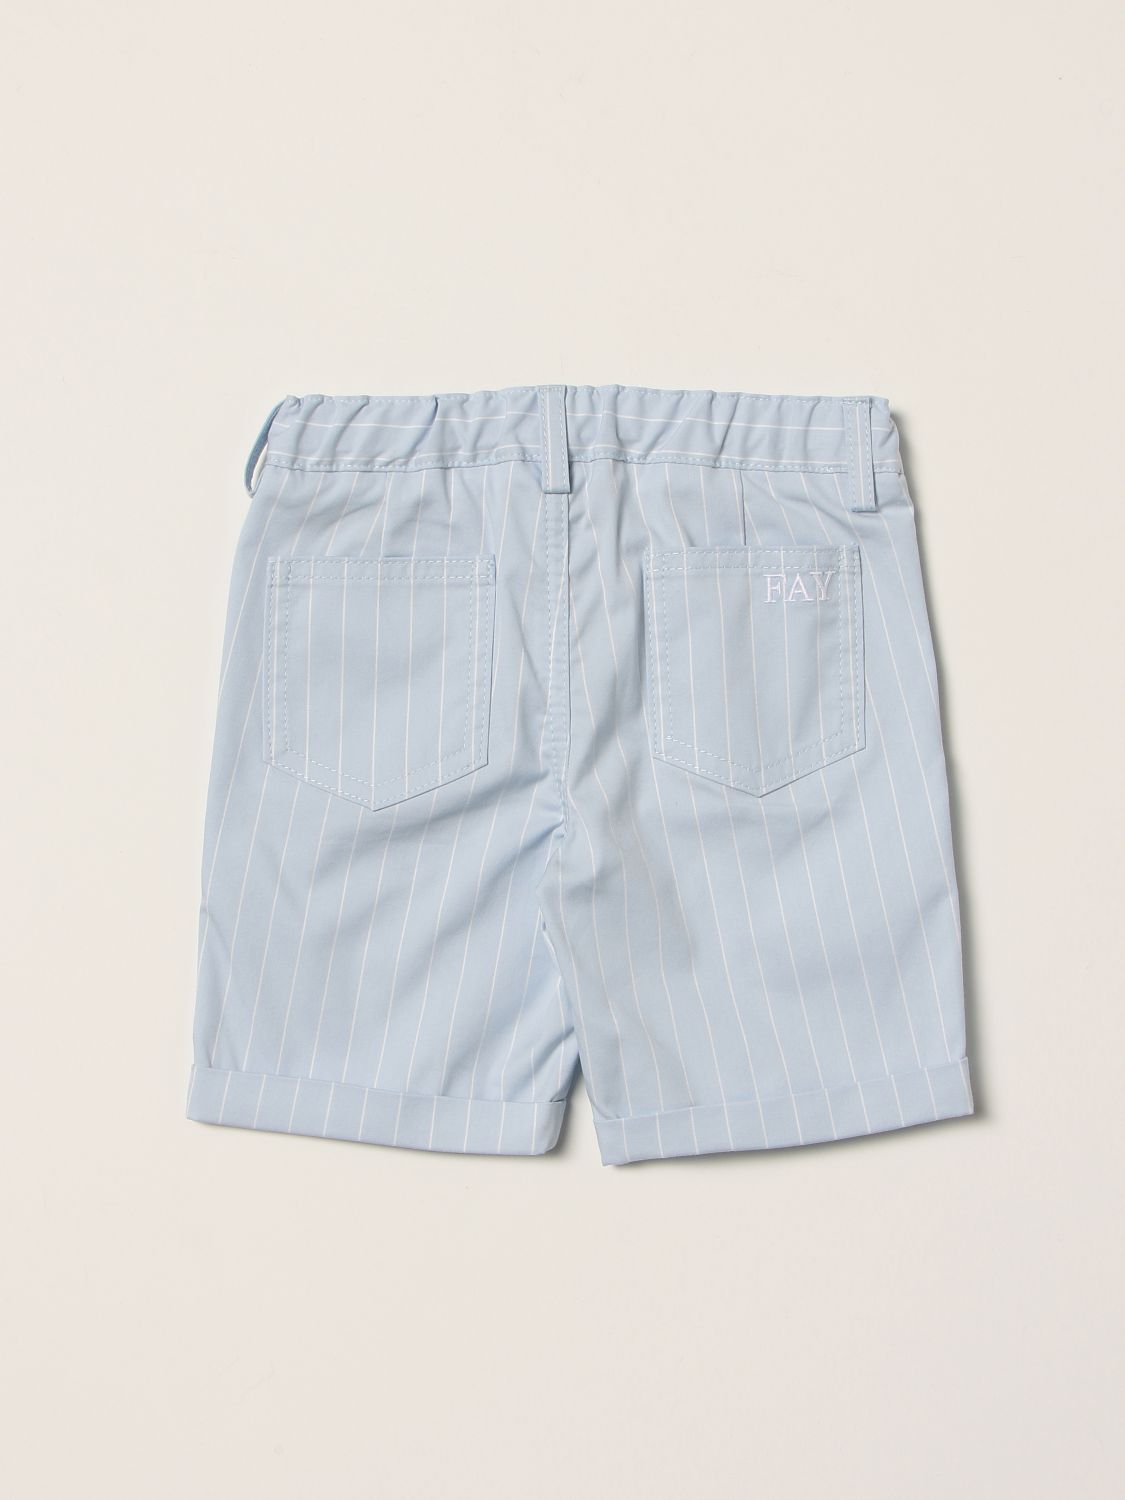 Pantalones cortos Fay: Pantalones cortos Fay para bebé azul claro 2